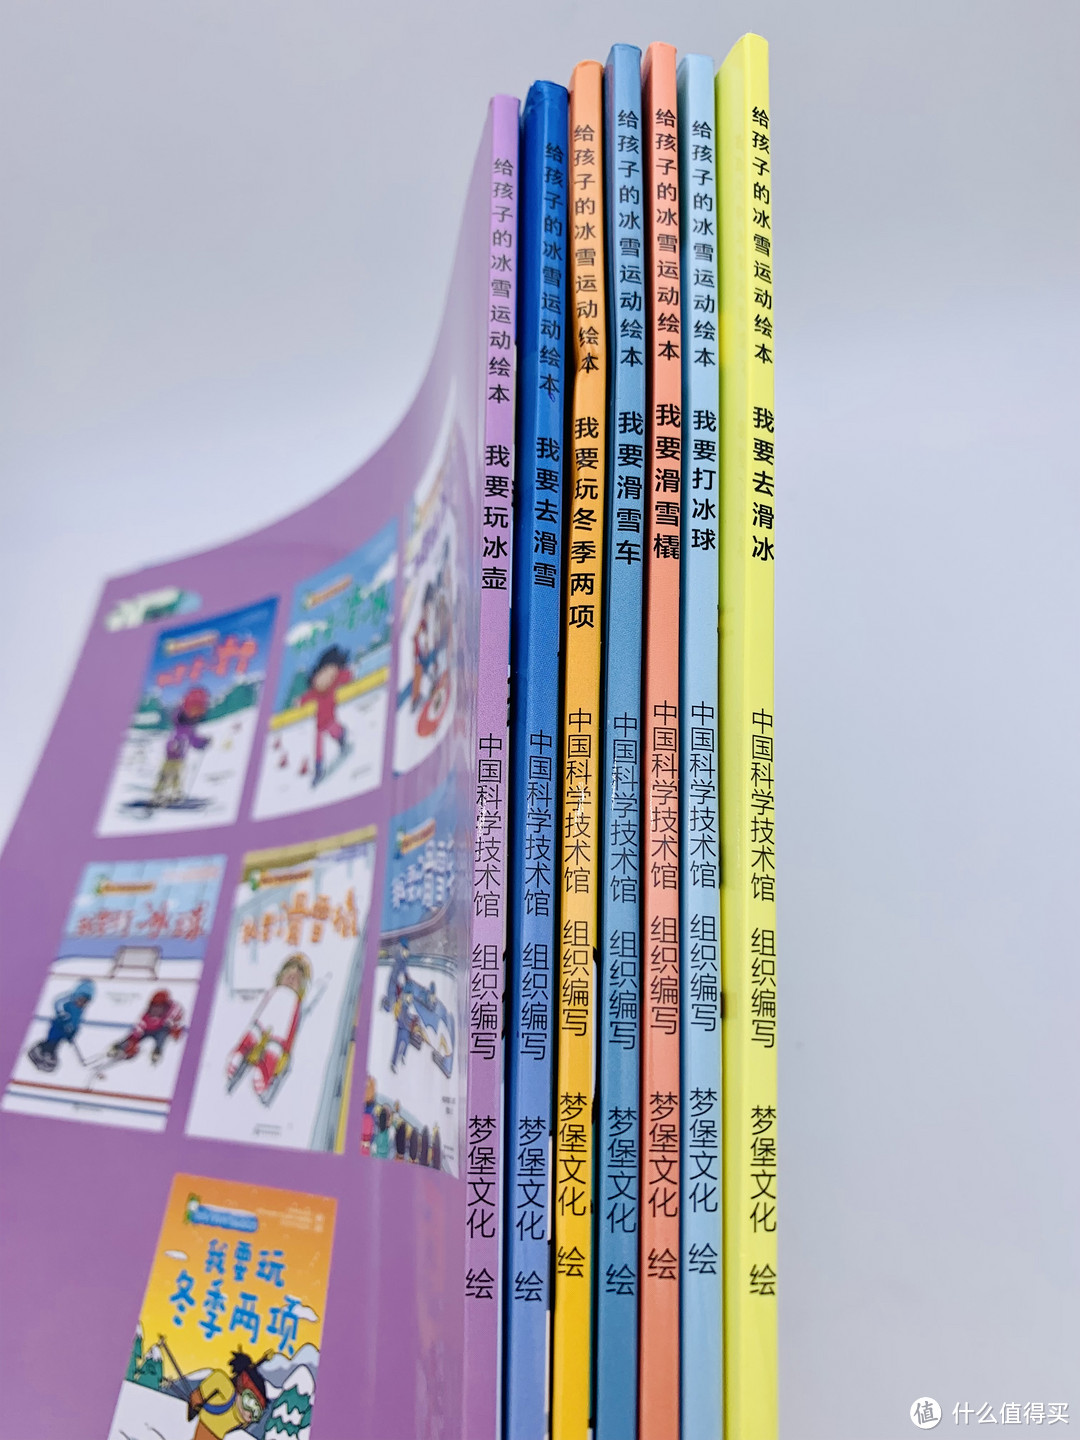 《给孩子的冰雪运动绘本》绝对是一本进阶版的绘本了，适合5-14岁儿童阅读